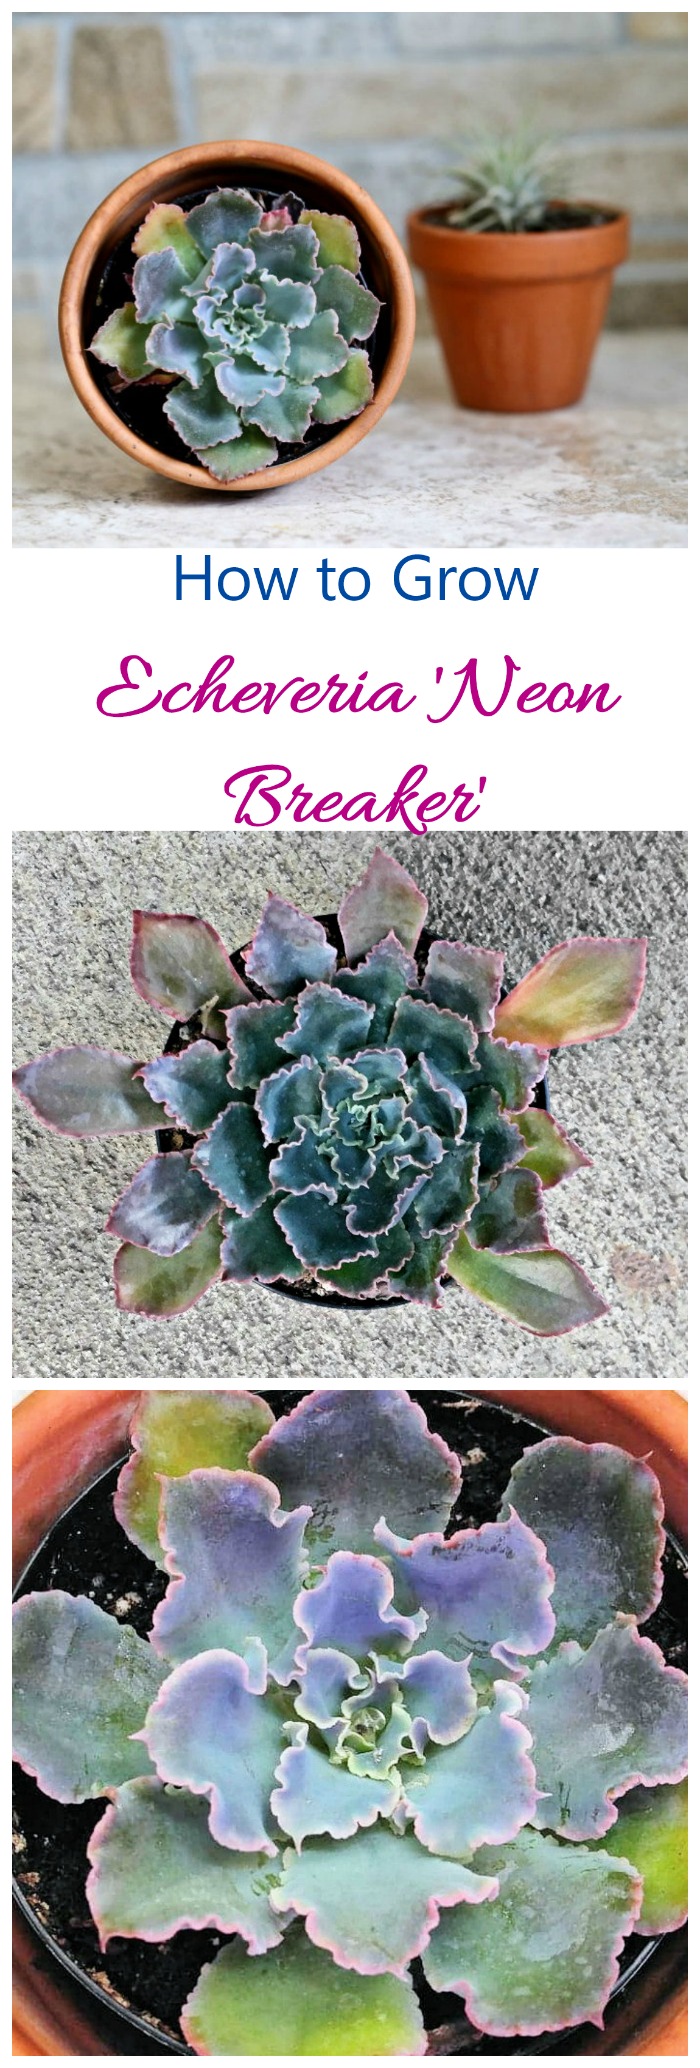 Echeveria Neon Breakers - Coltivate questa straordinaria succulenta per un colore fantastico